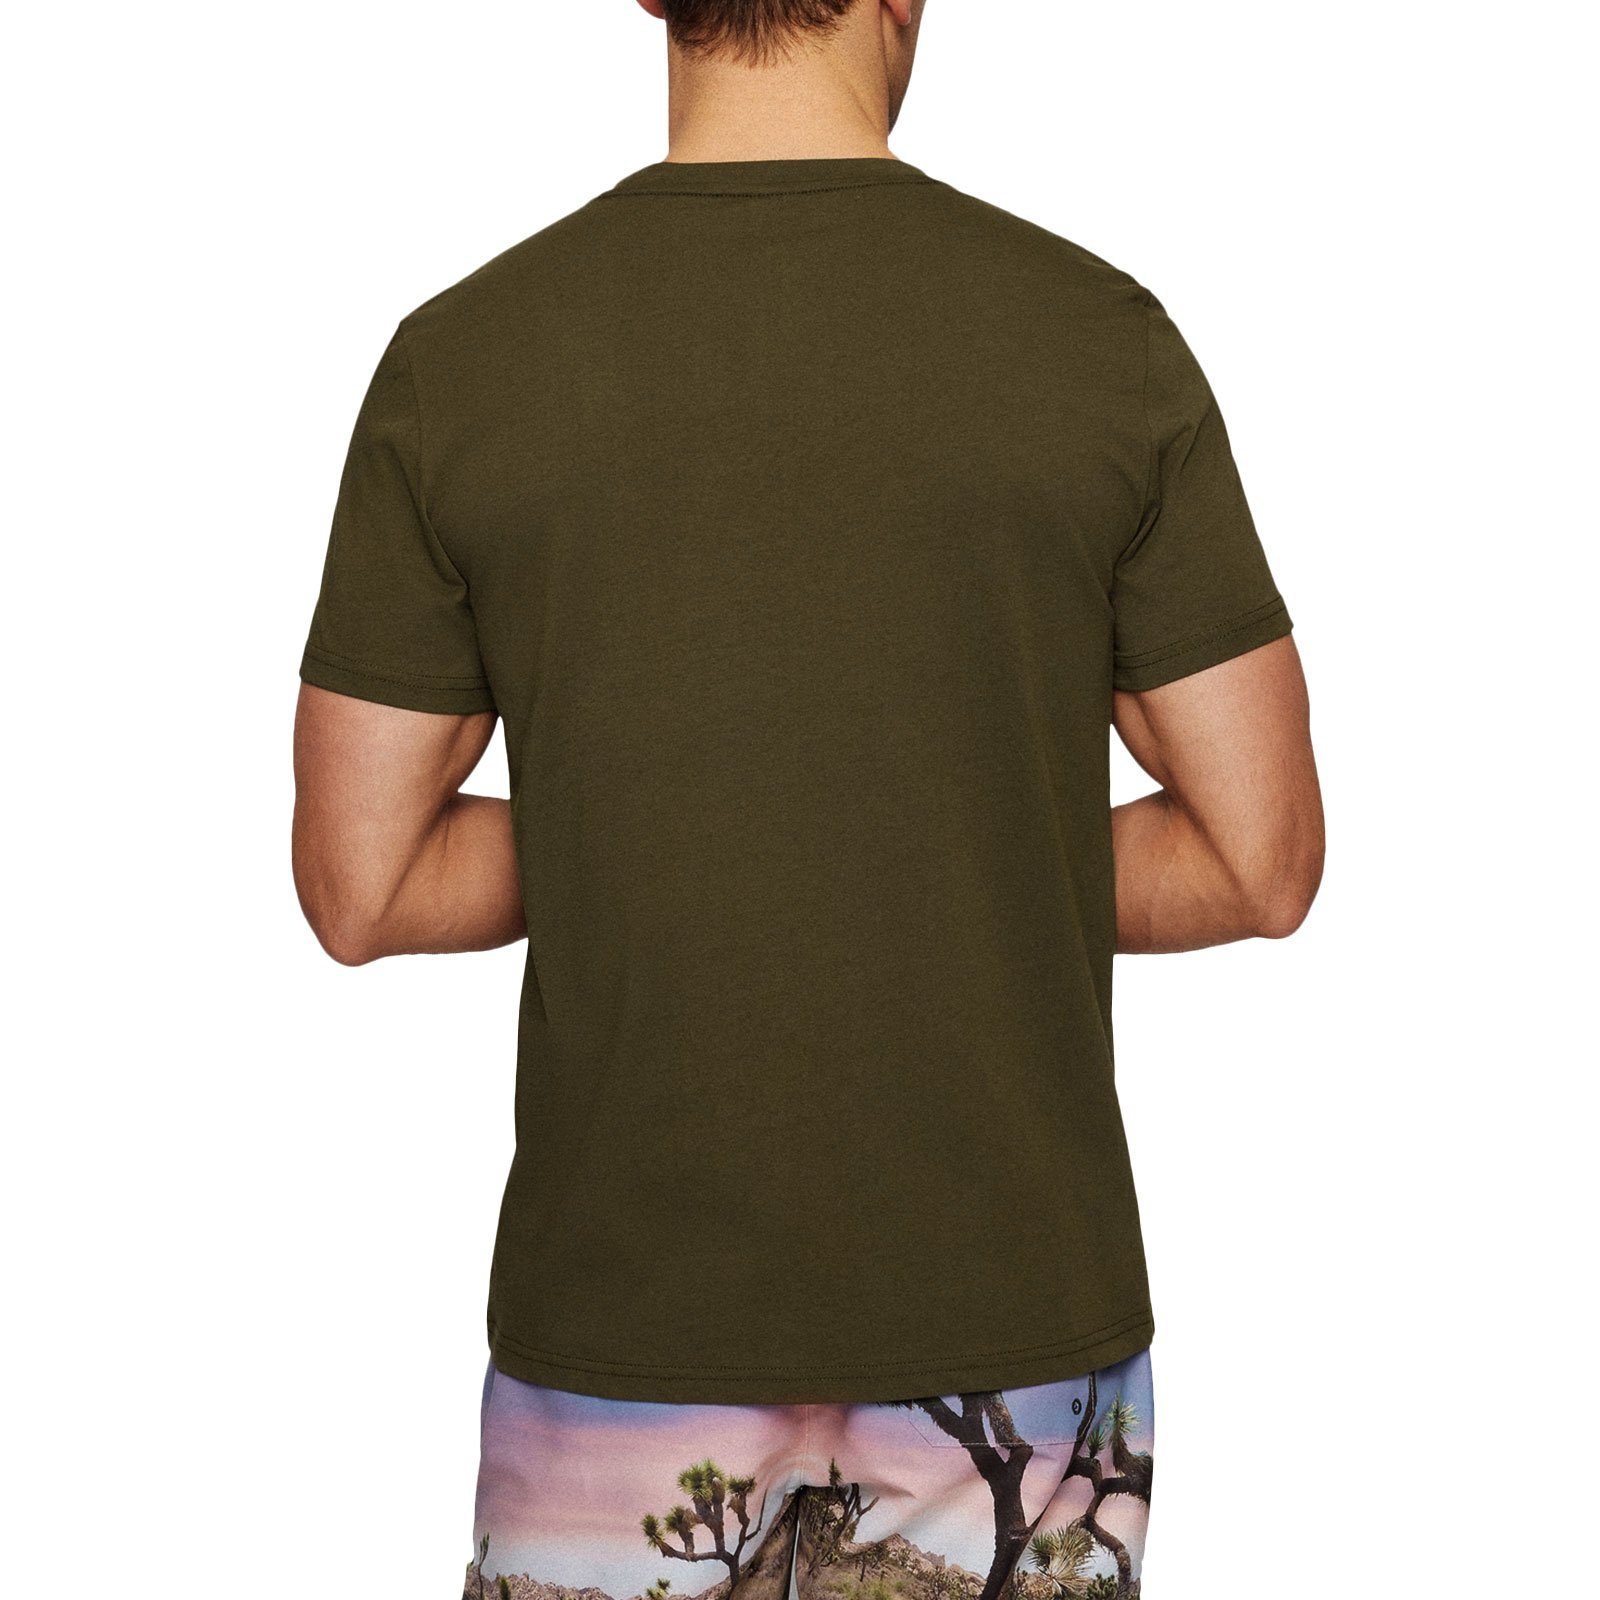 großem green dark mit T-Shirt der Protection auf Sun Markenprint Brust 308 BOSS RN